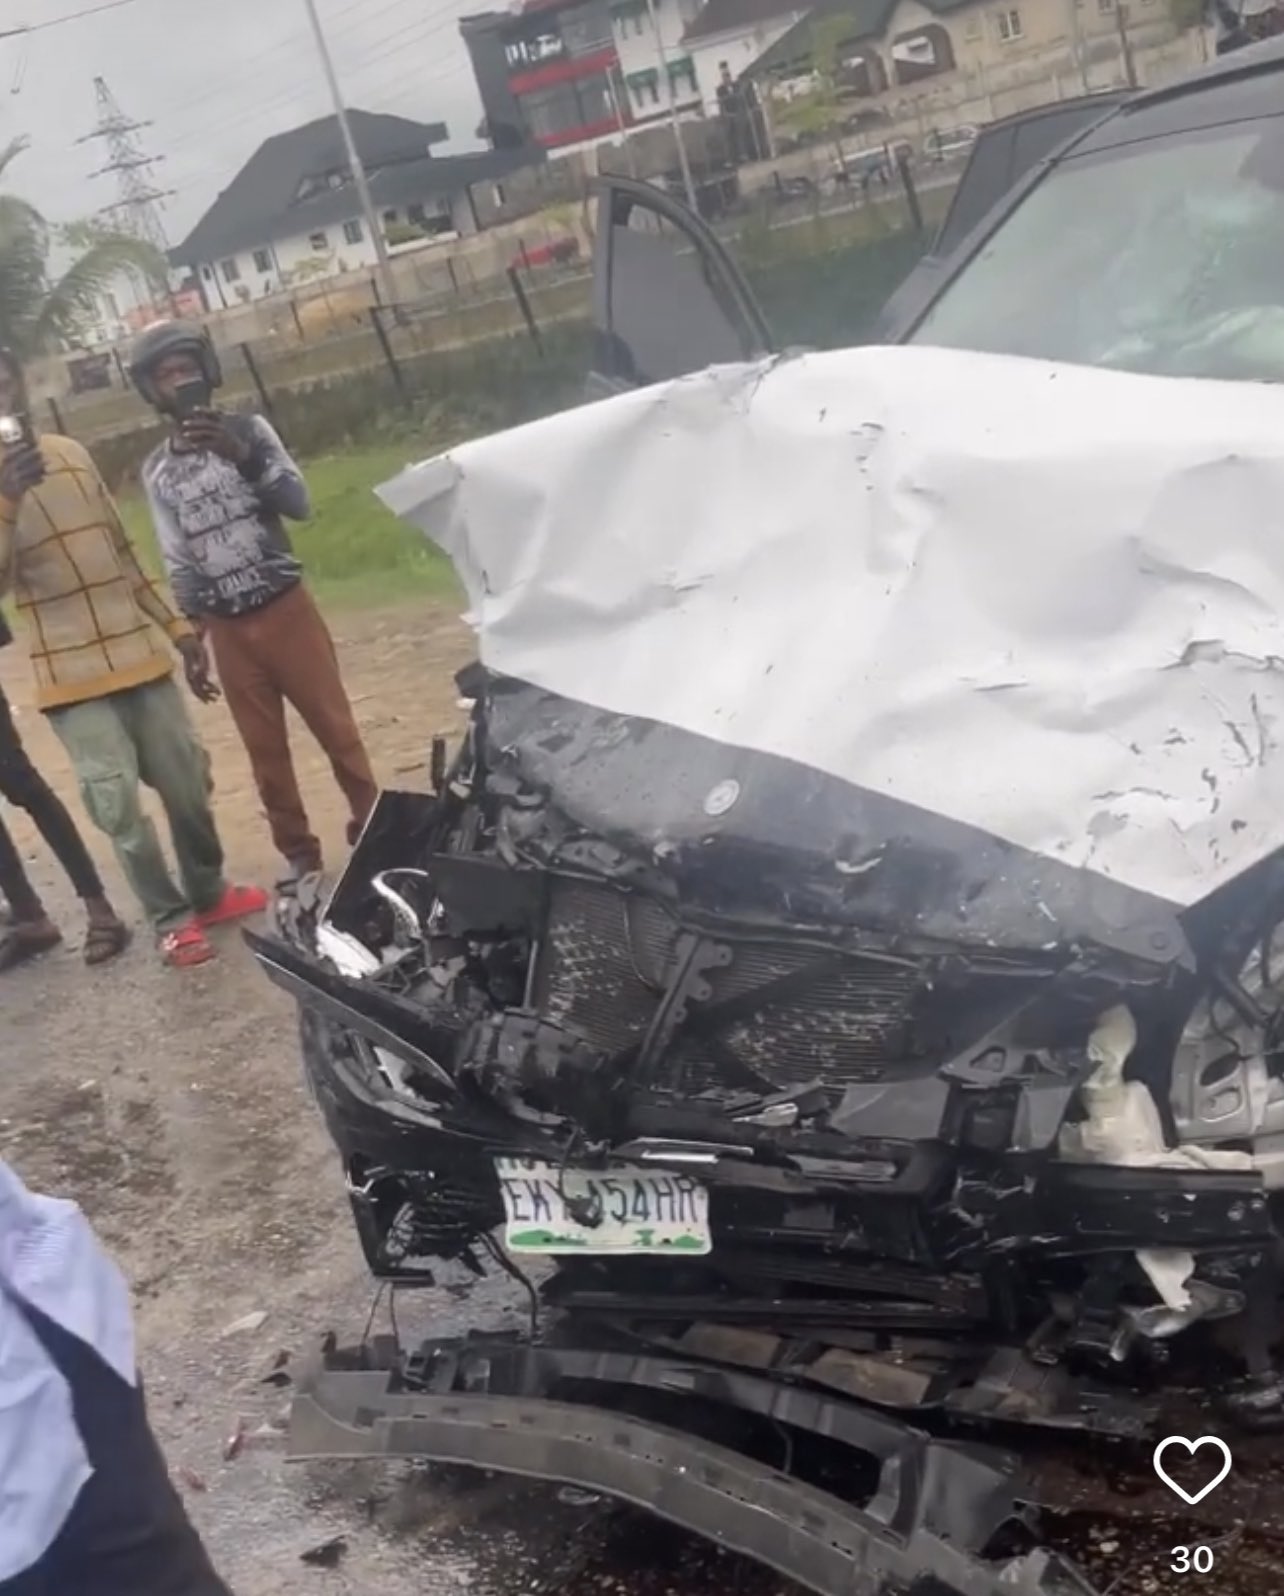 Popular Skit Maker Oga Sabinus Escapes Unhurt In Road Accident (Photos, VIdeo)